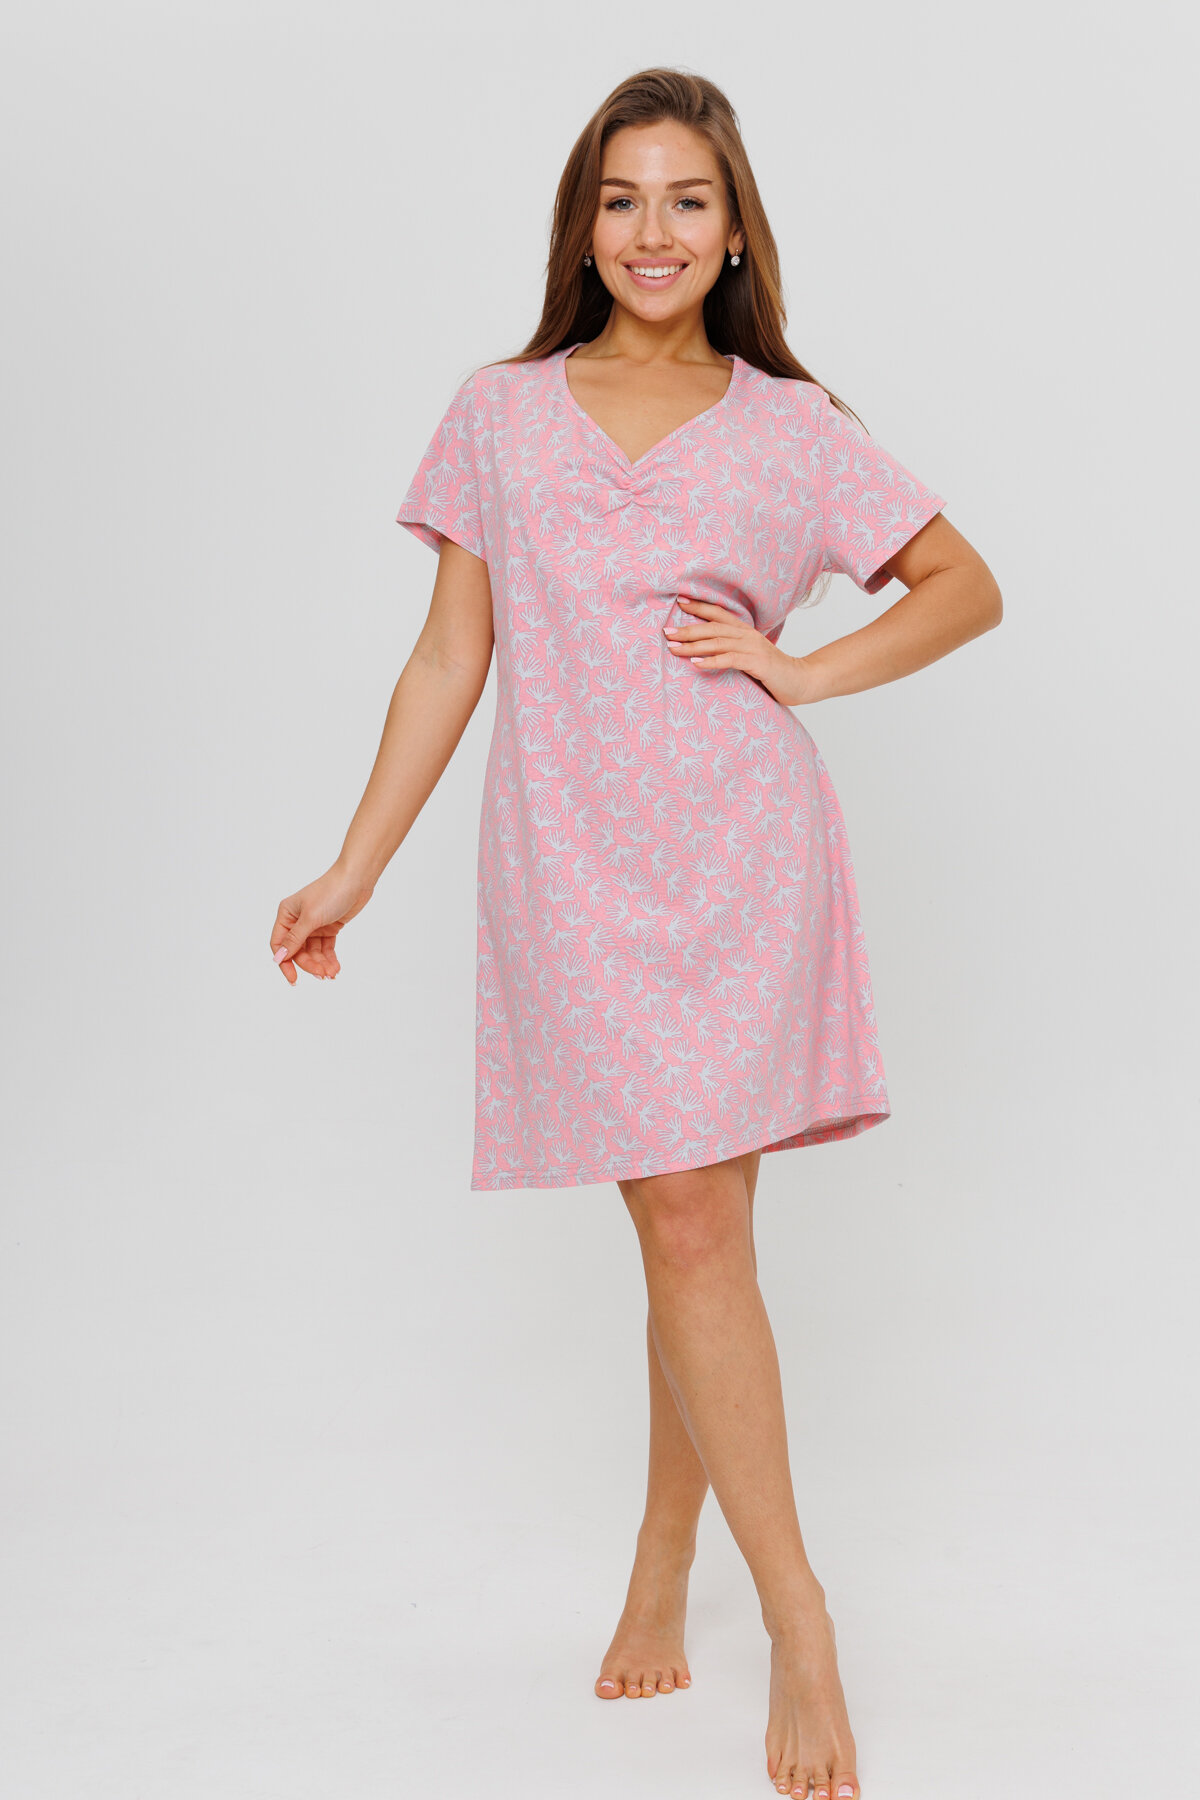 Женская ночная сорочка Modellini 1900/1 розовая, 46 размер - фотография № 1